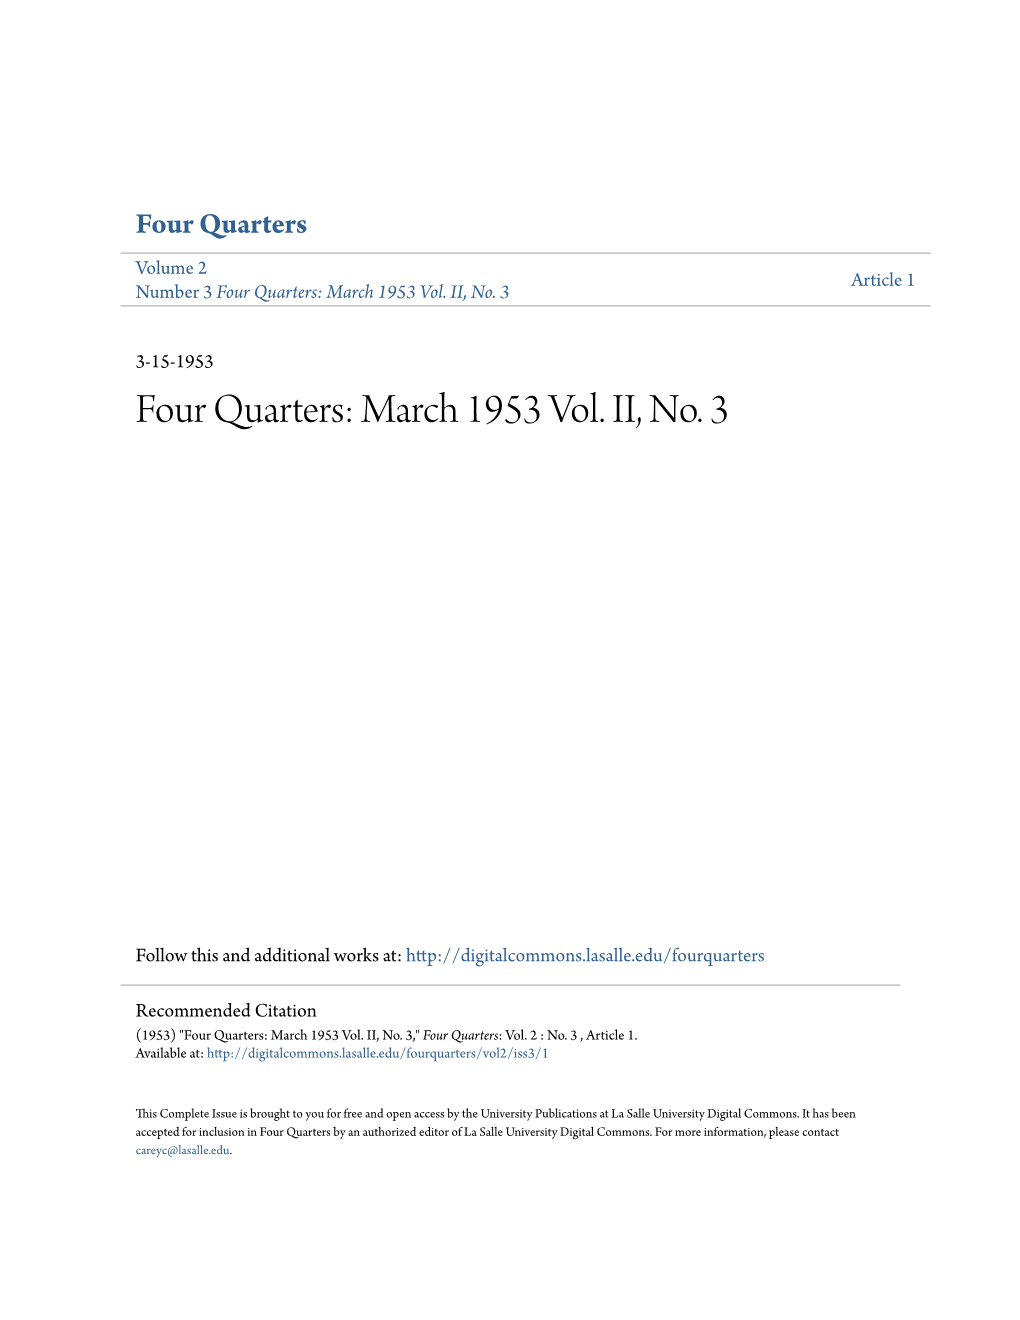 Four Quarters Volume 2 Article 1 Number 3 Four Quarters: March 1953 Vol